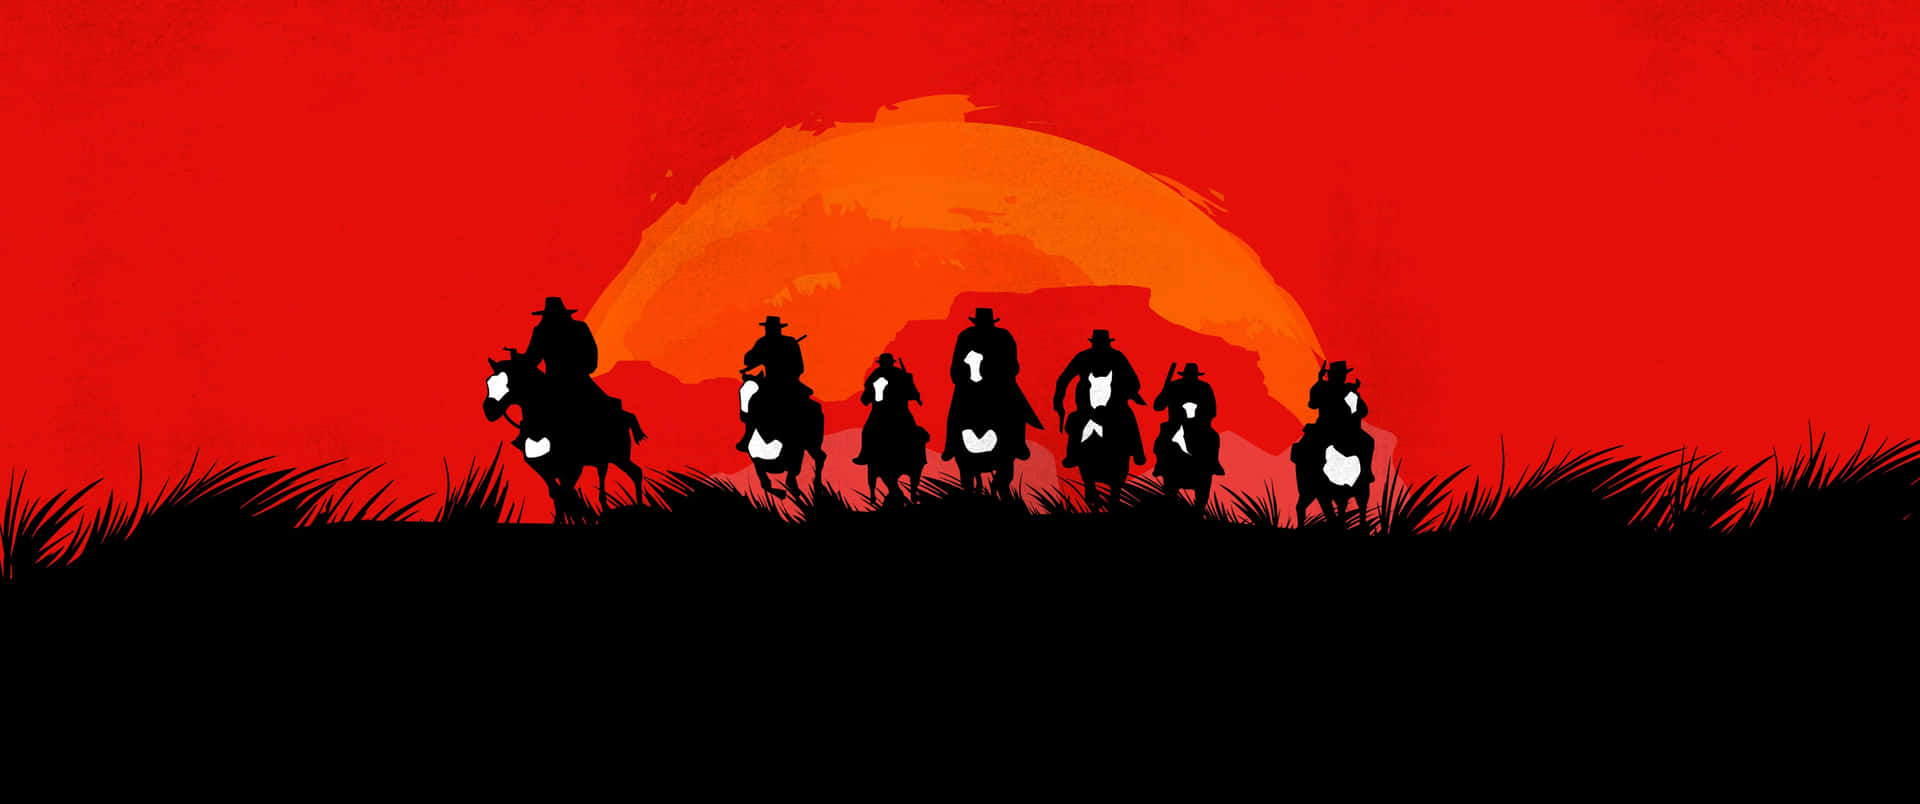 3440x1440p Red Dead Redemption 2 Background Run Background